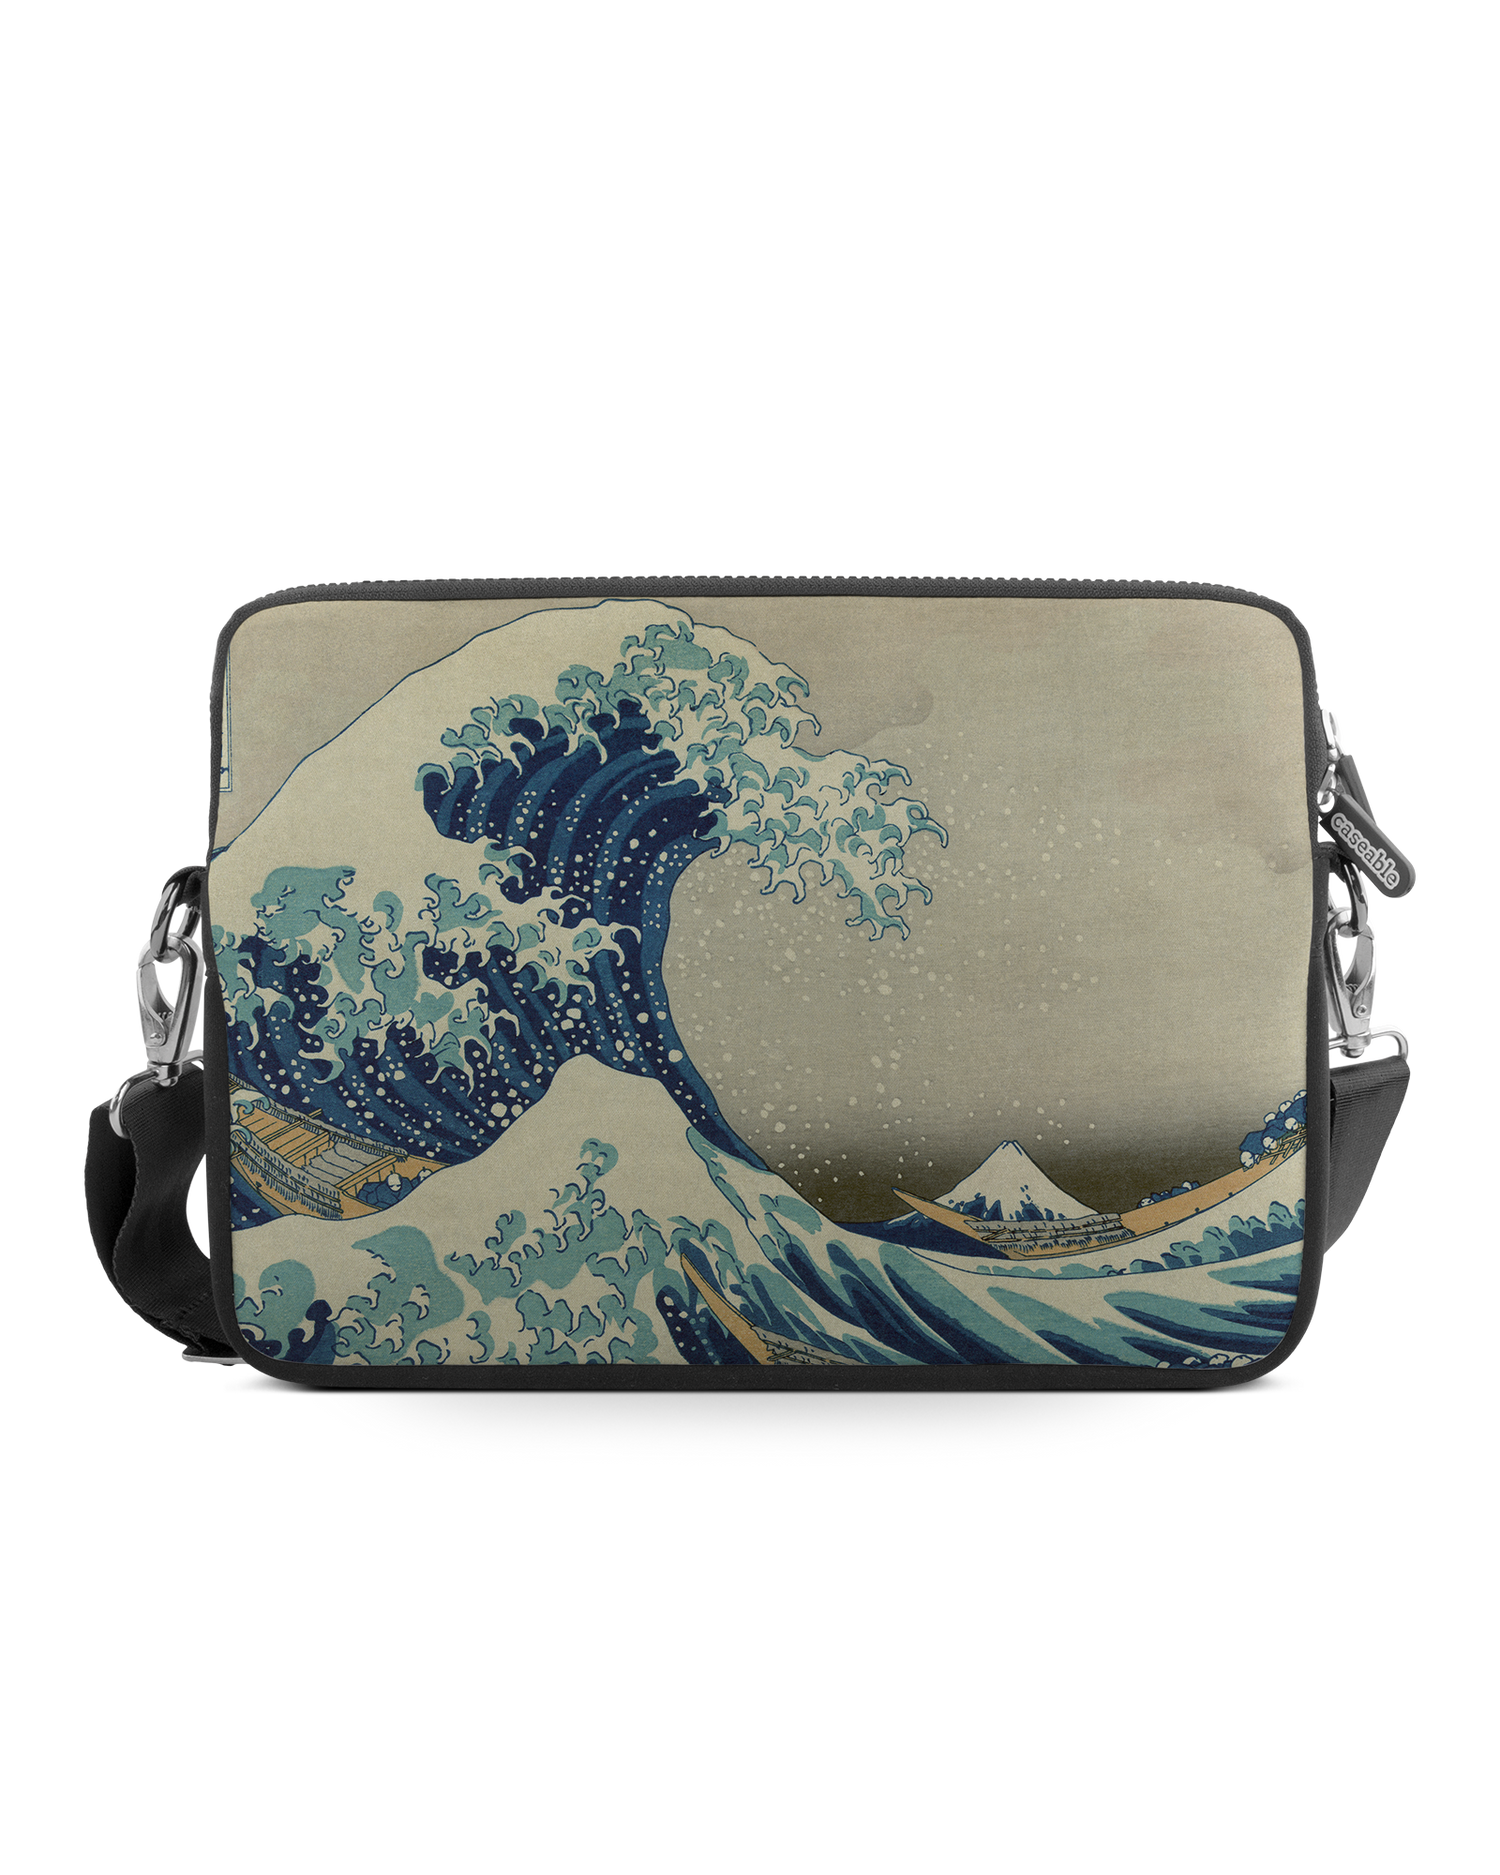 Great Wave Off Kanagawa By Hokusai Premium Laptoptasche 13 Zoll: Vorderansicht